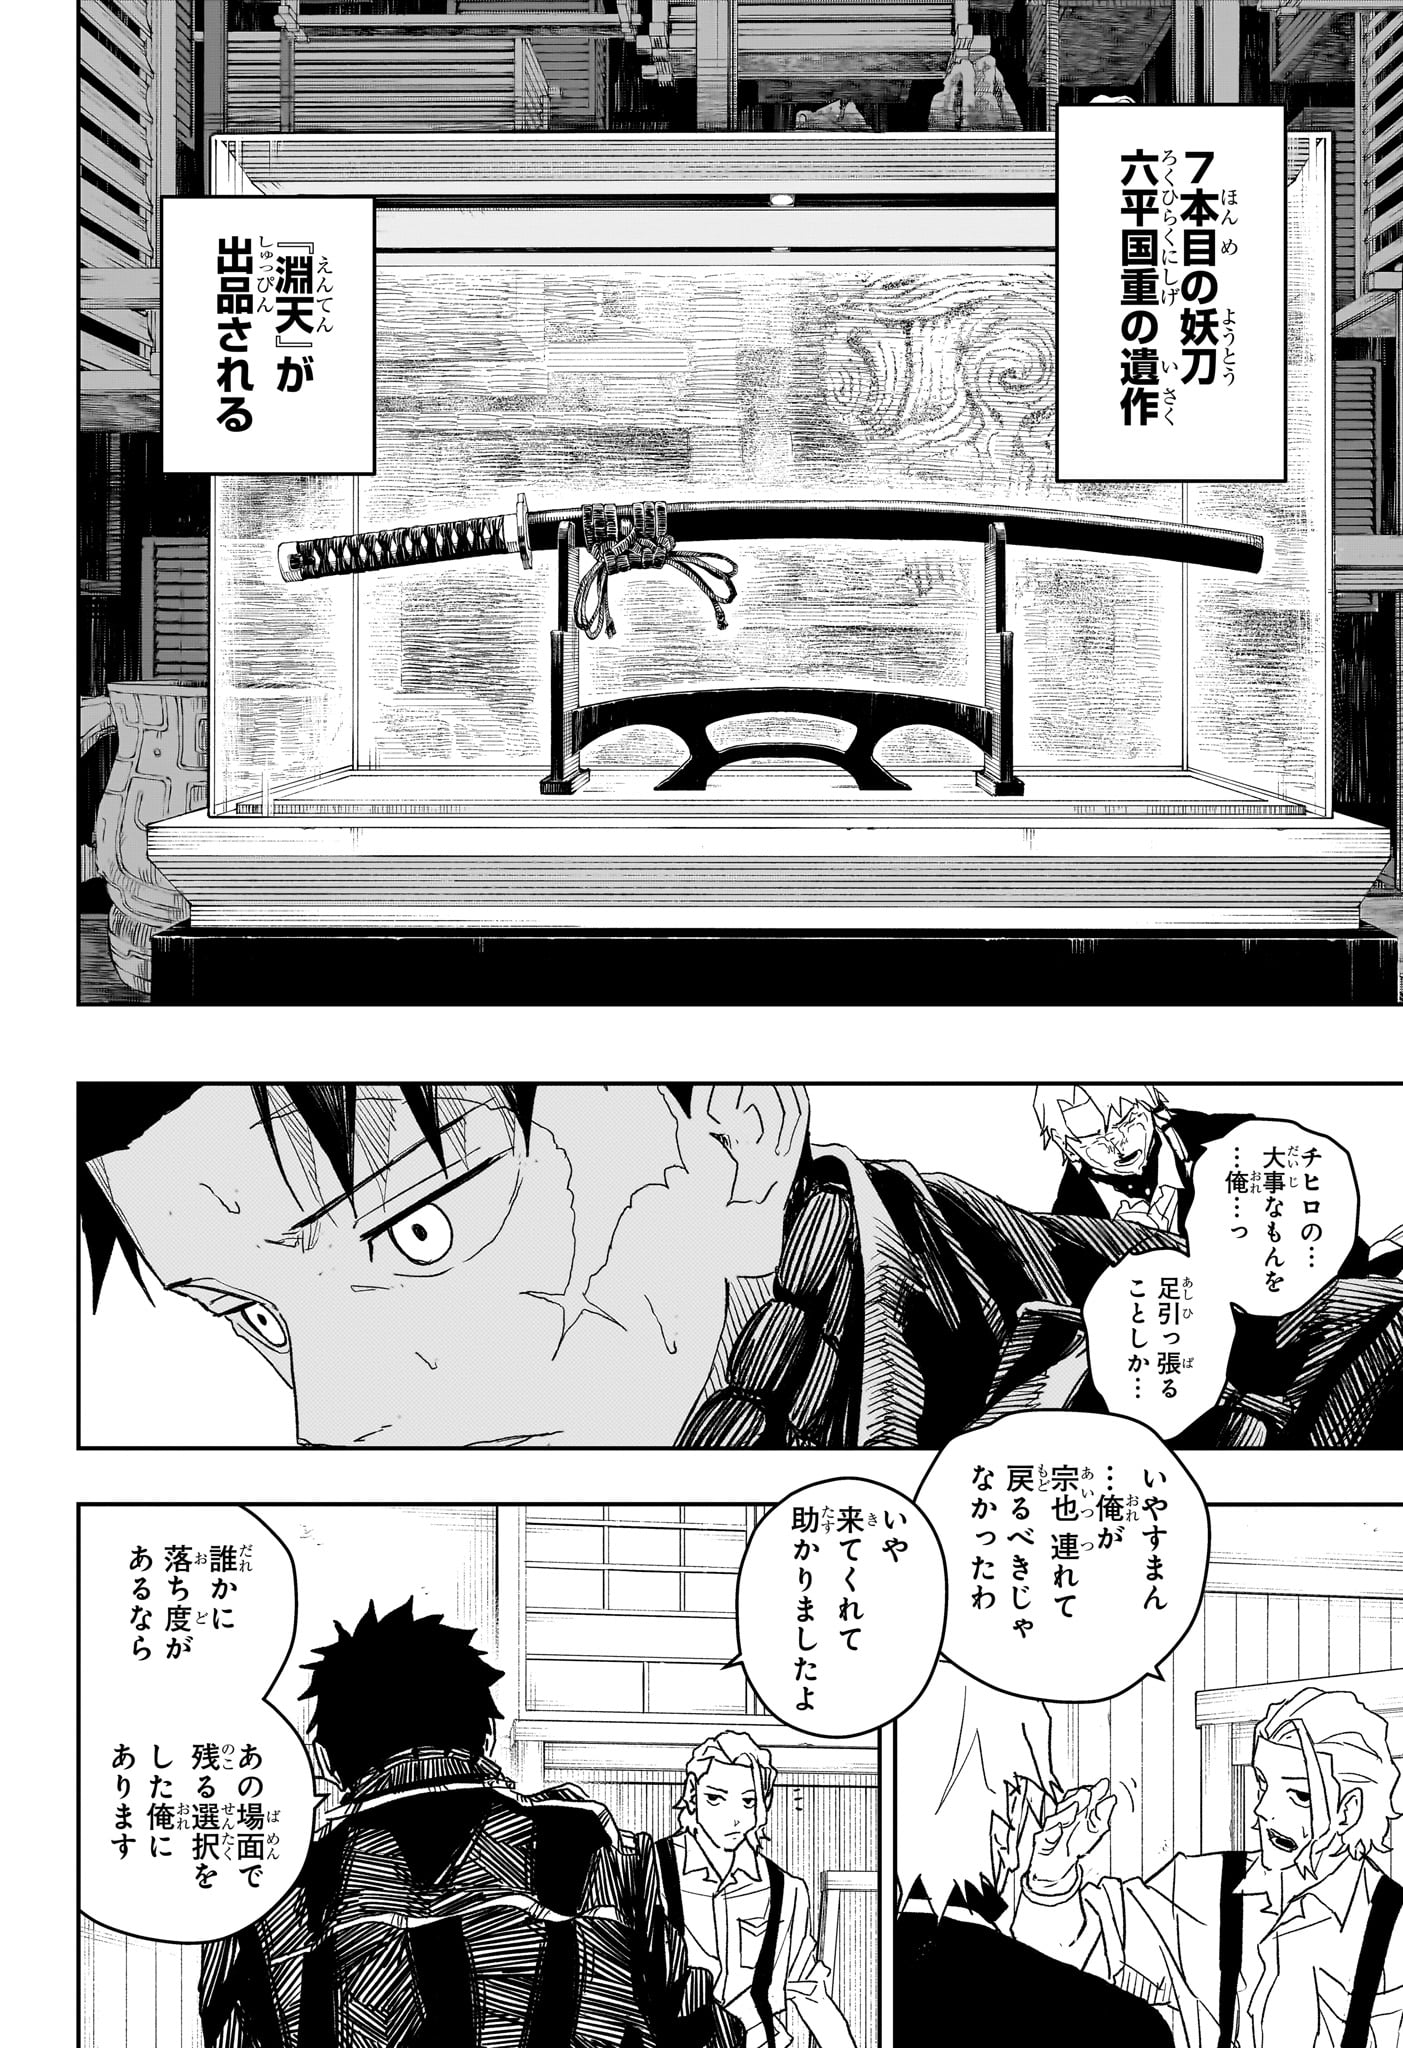 Kagurabachi - Chapter 25 - Page 18